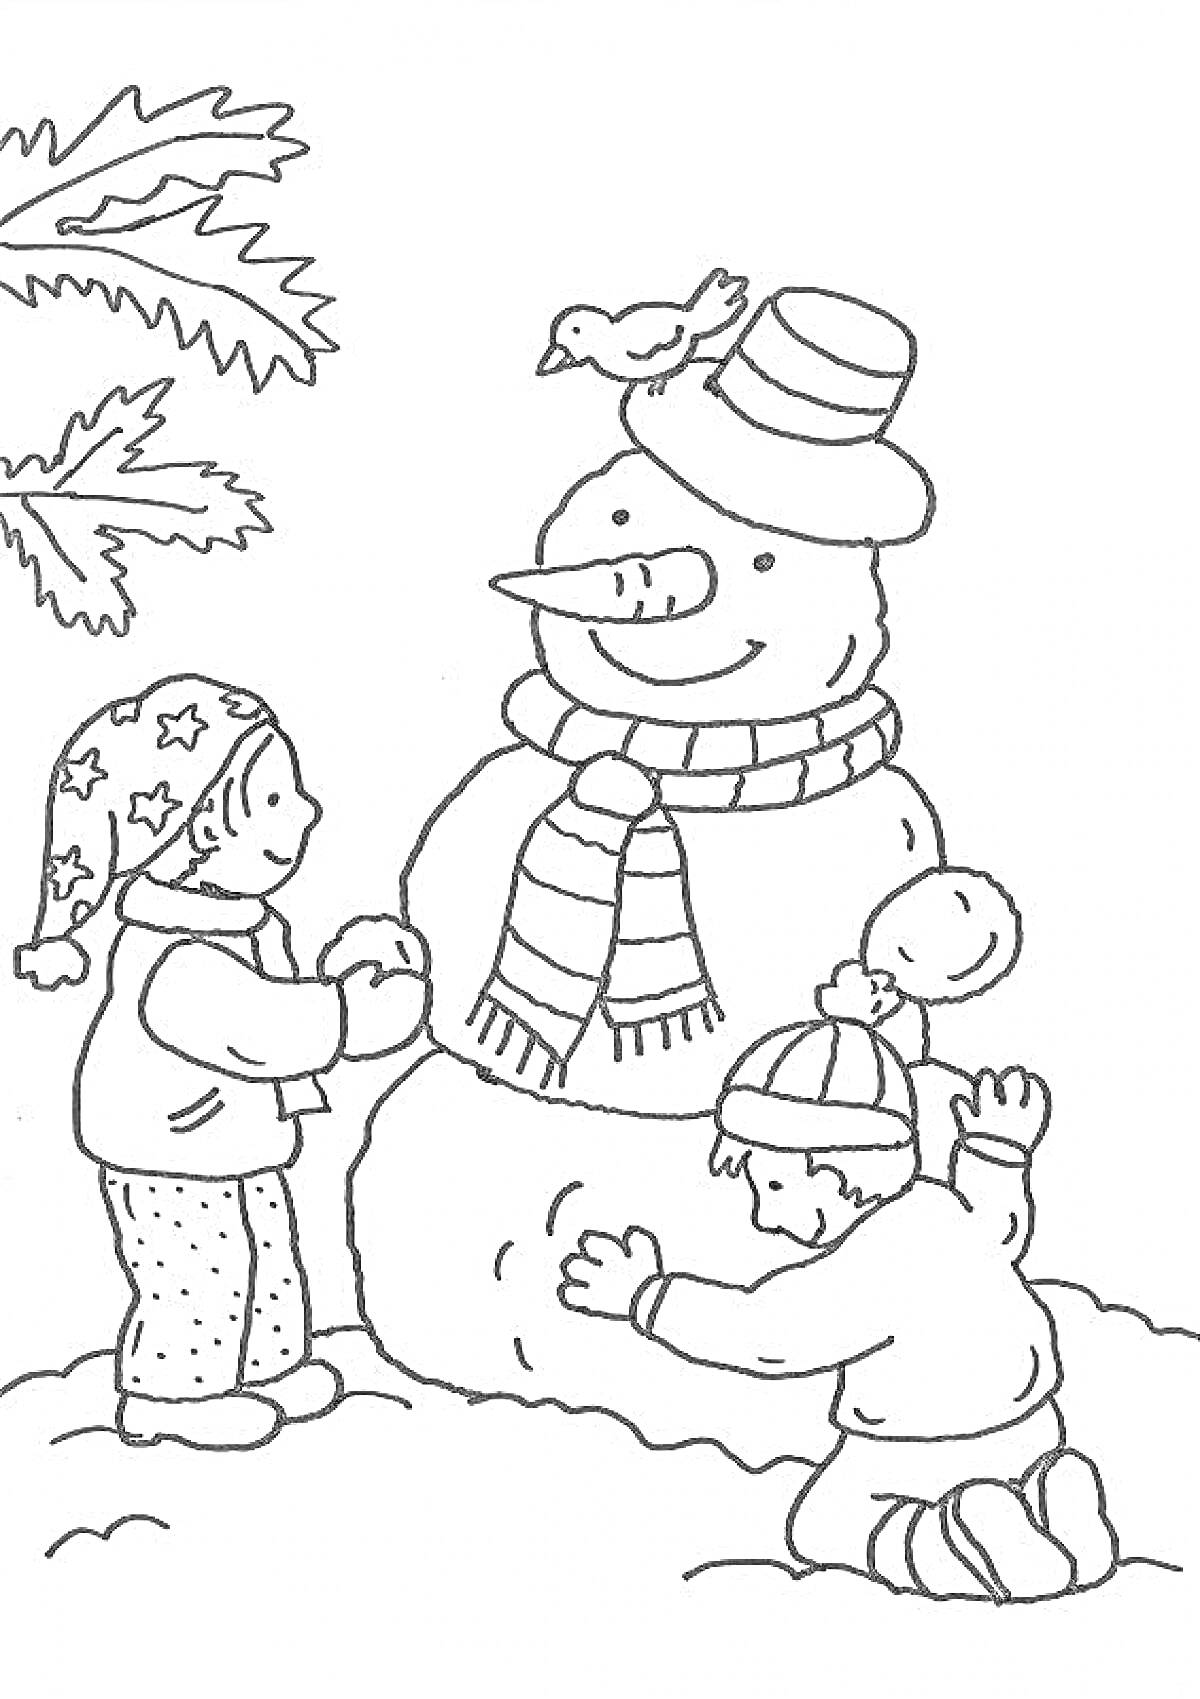 Раскраска Дети лепят снеговика с шарфом и шапкой, птица на снеговике, ветка дерева